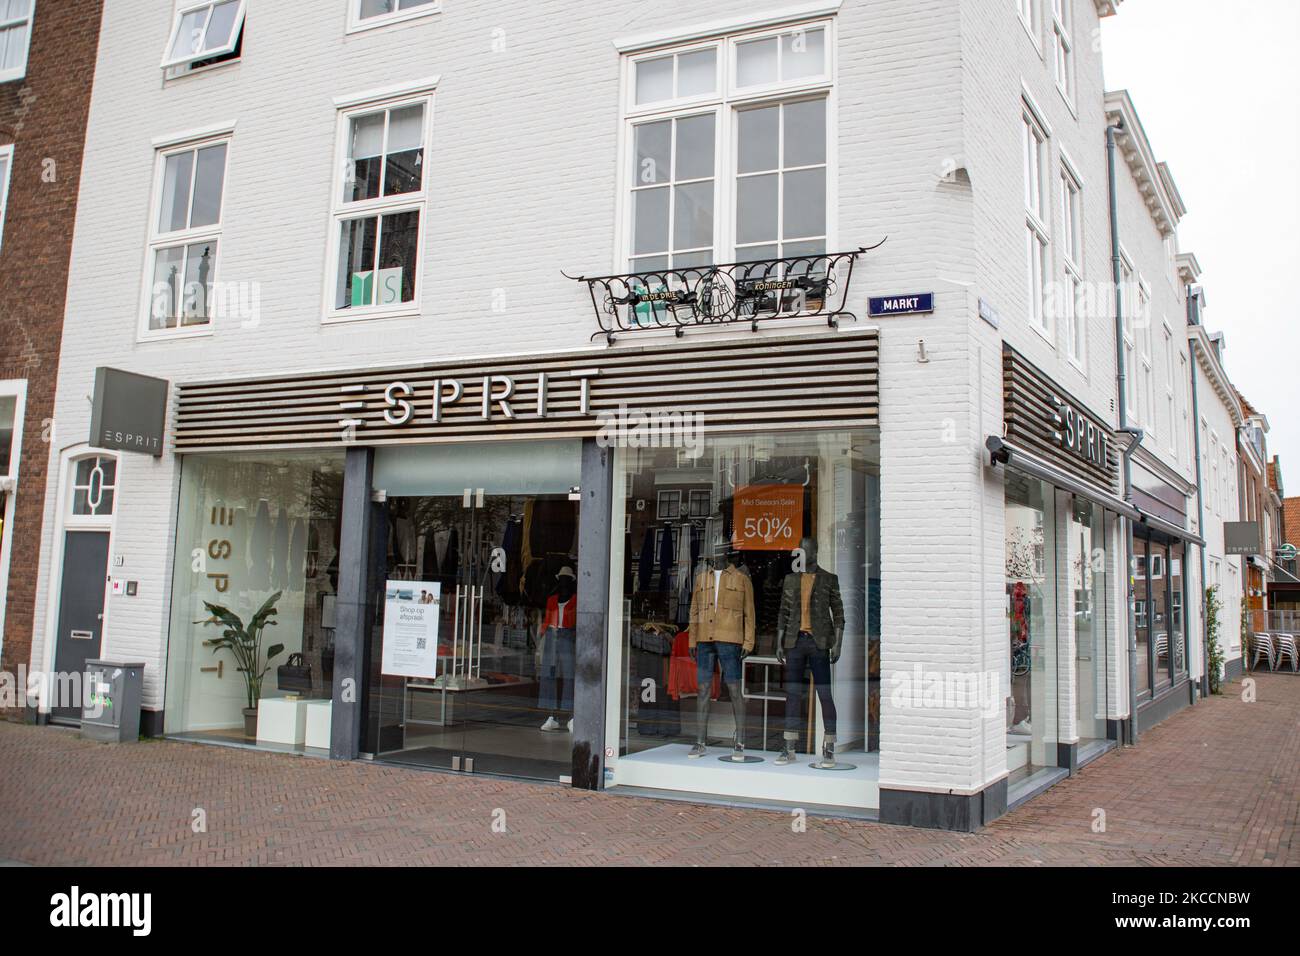 Negozio Esprit con il logo sulla facciata dell'edificio e un cartellone  come si vede chiuso nella città olandese di Middelburg. Esprit Holdings  Limited è un produttore pubblico di abbigliamento, accessori per calzature,